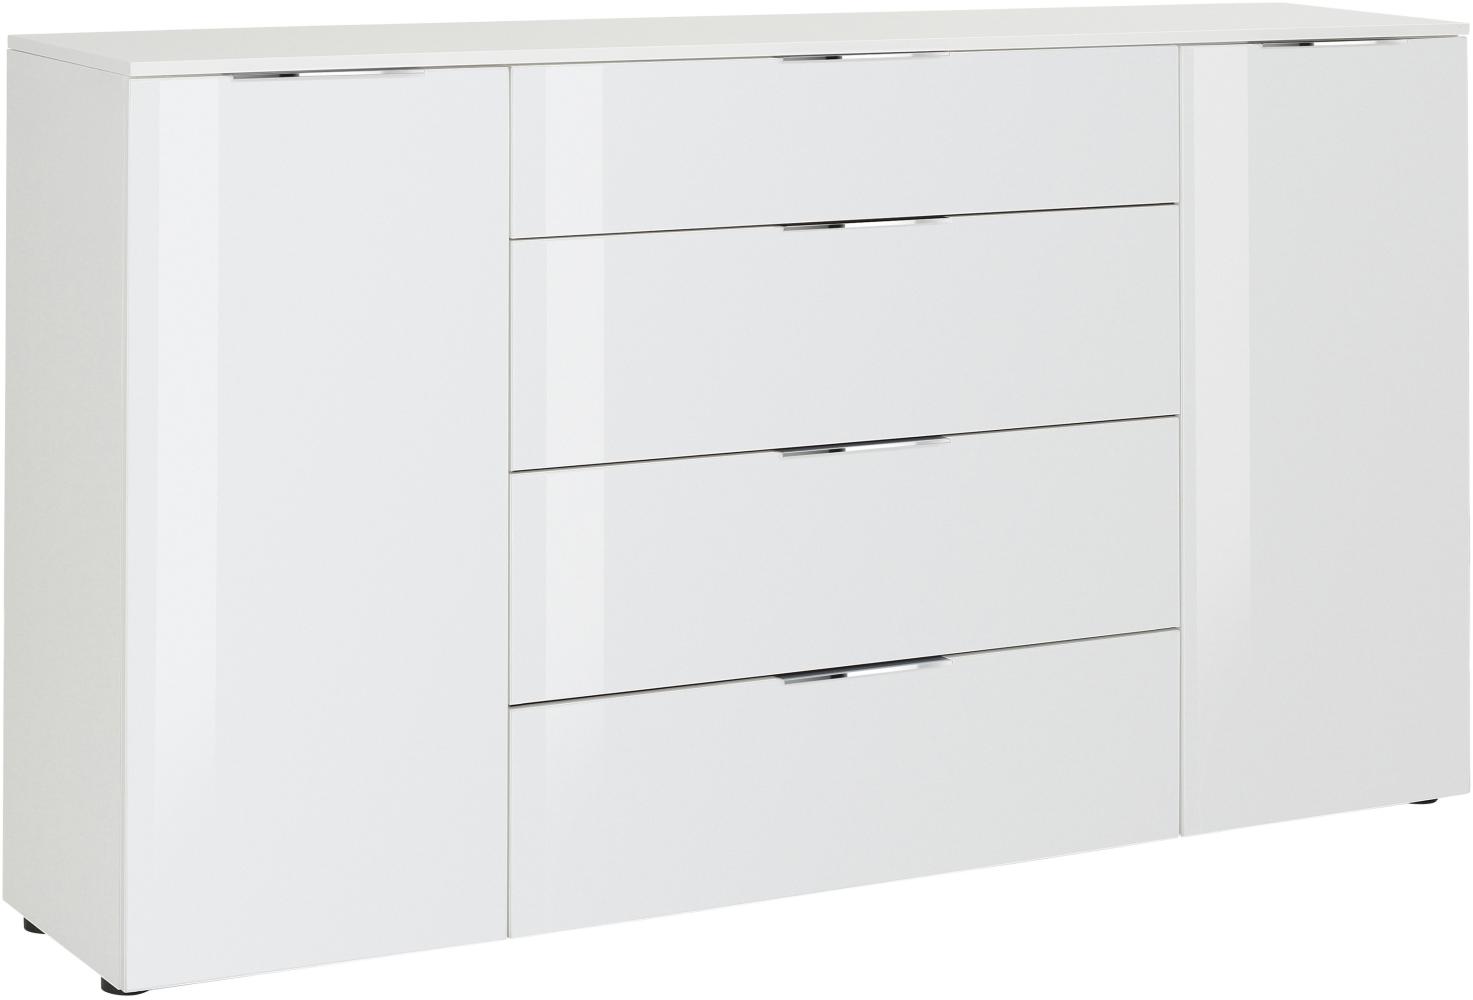 Kommode "78163468" in weiß matt - Weißglas mit 4 Schubladen und 2 Türen. Abmessungen (BxHxT) 180x100x40 cm Bild 1